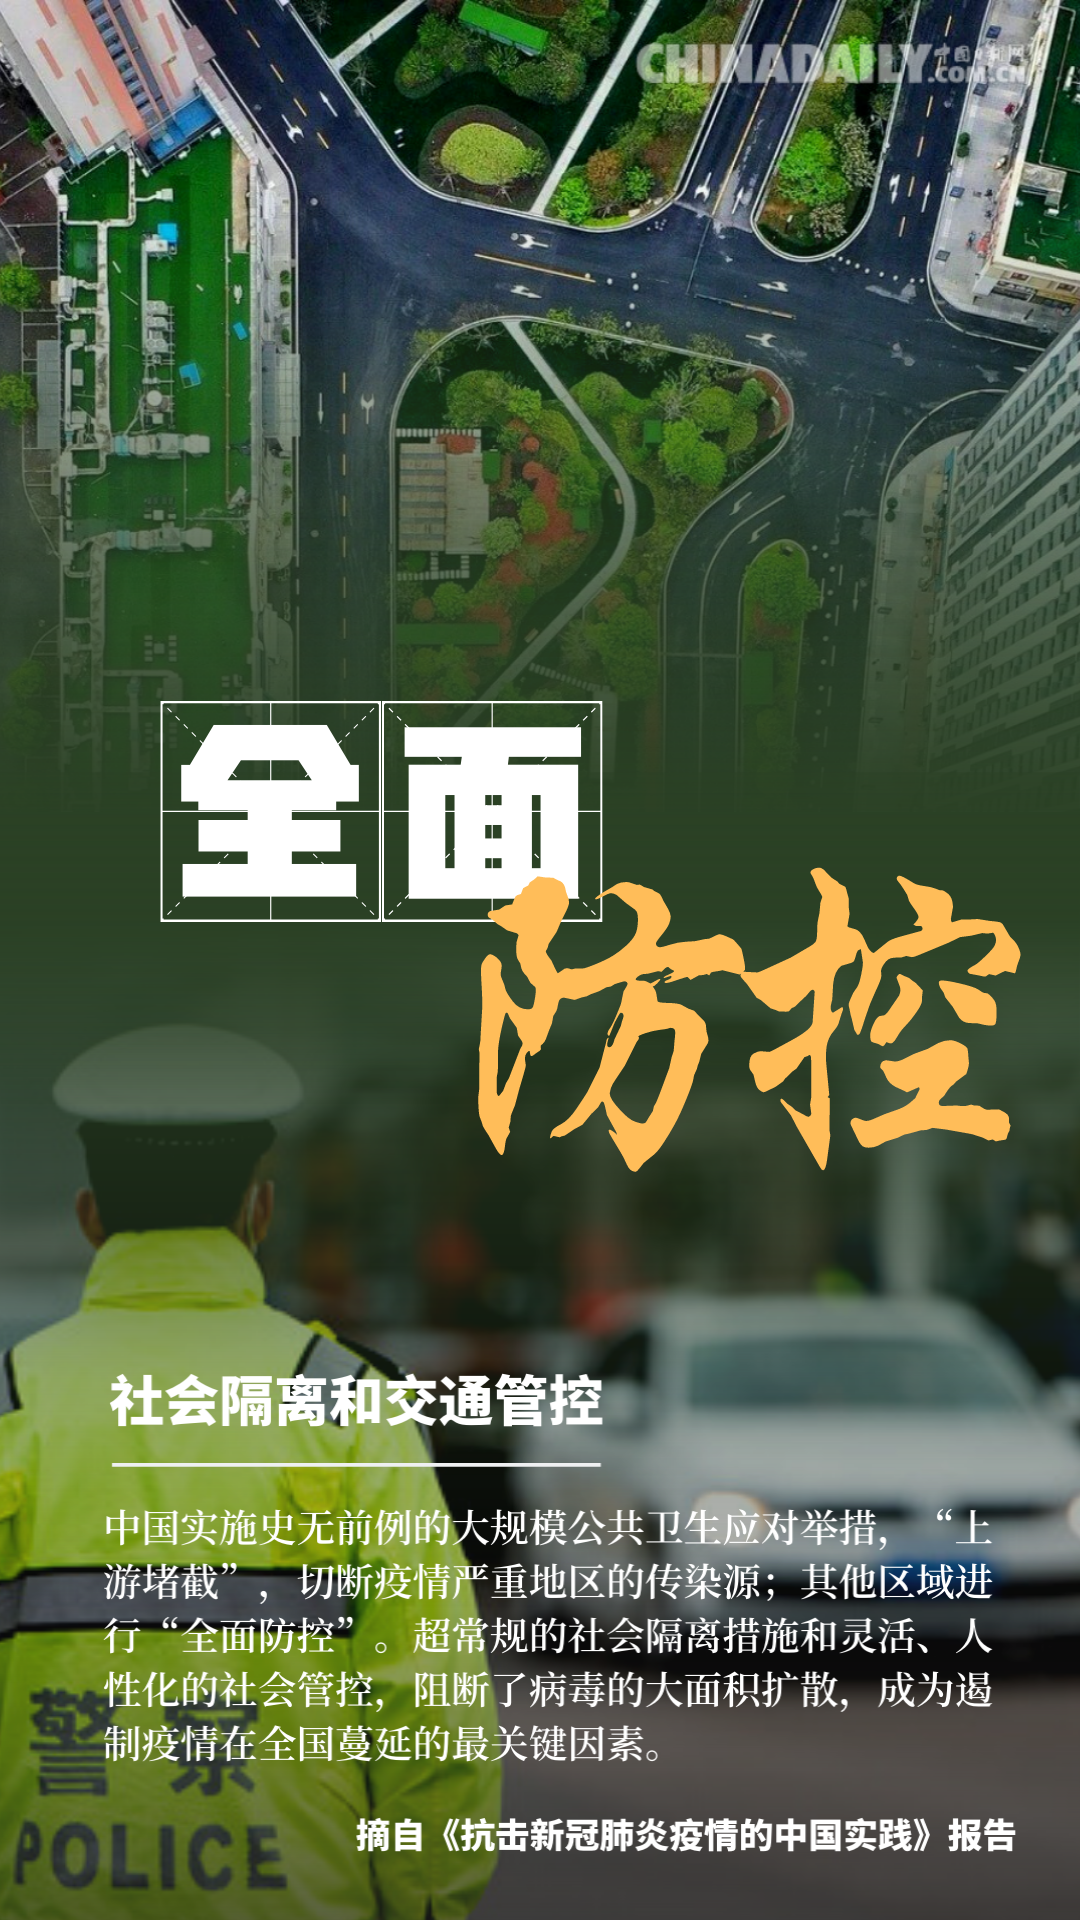 海报 ▏抗击新冠肺炎疫情的中国实践